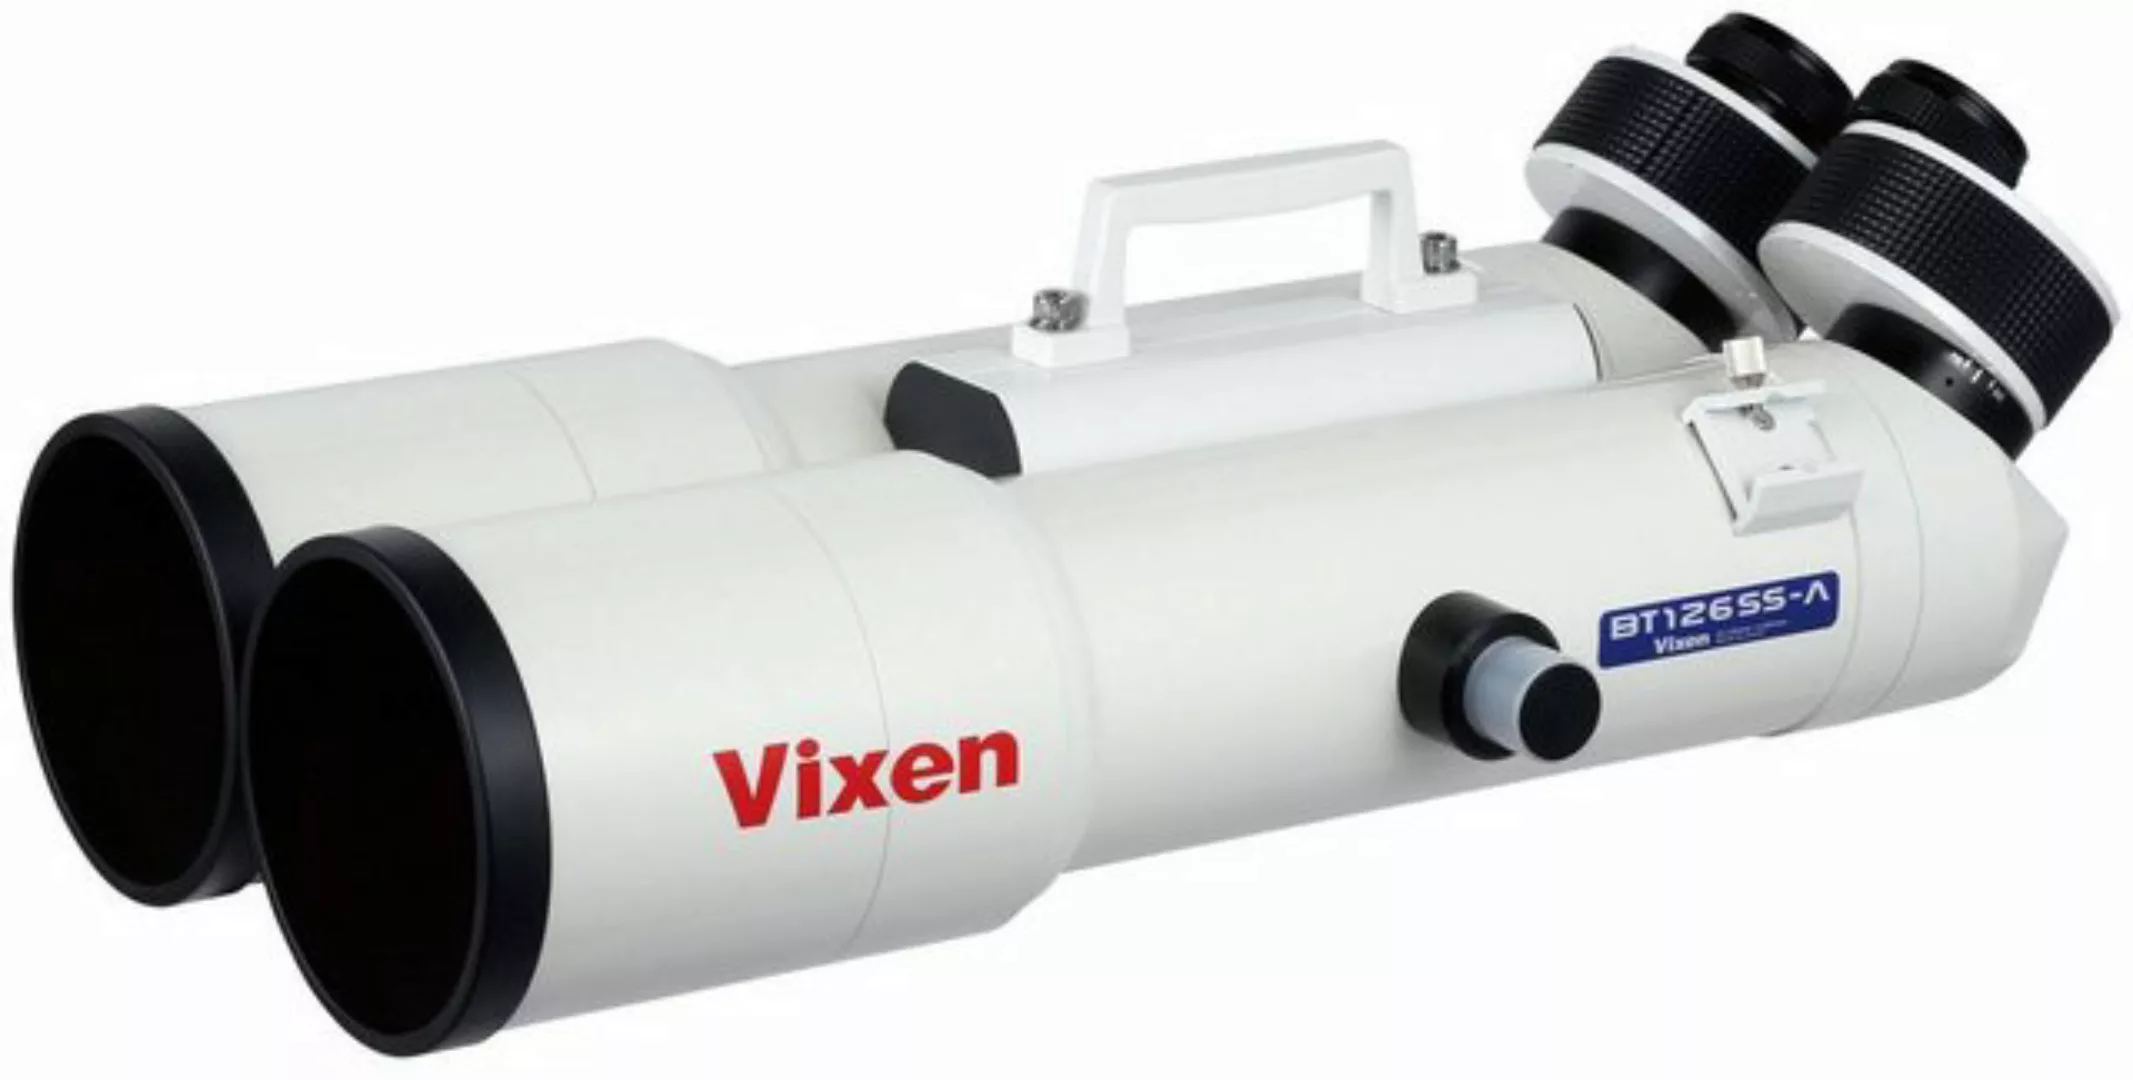 Vixen Vixen BT126SS-A astronomisches Fernglas Fernglas günstig online kaufen